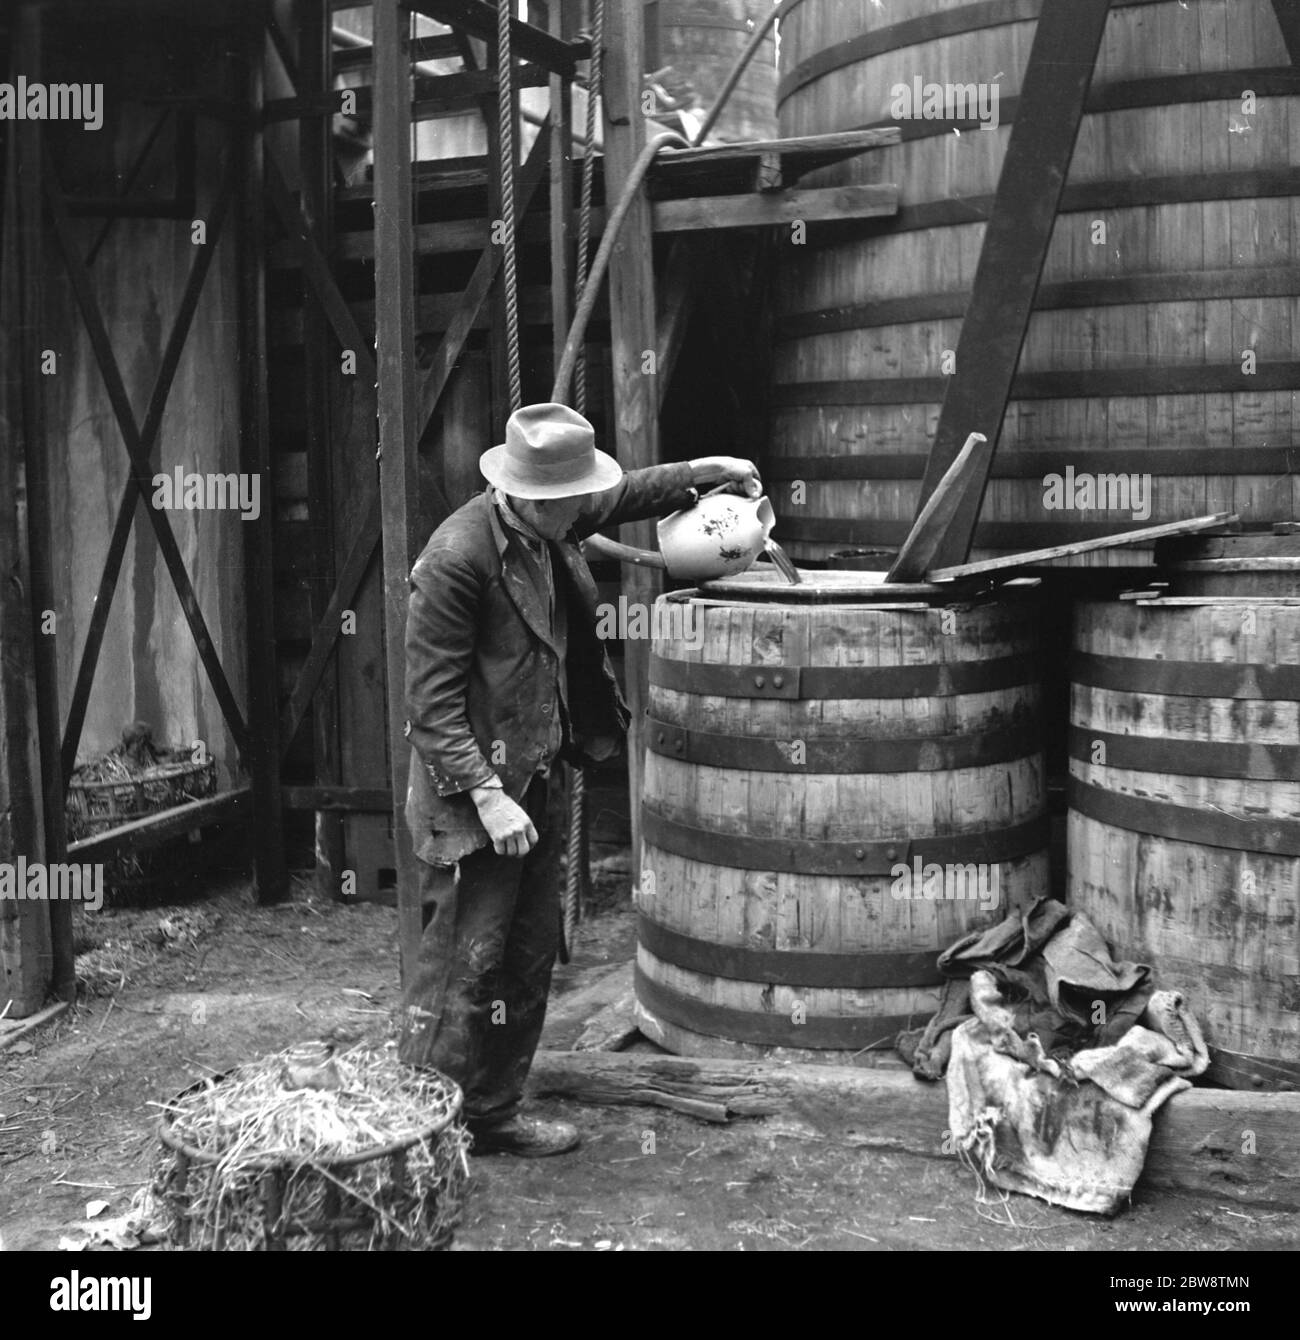 Un exemple de méthodes de fabrication primitive dans les années 1930, un homme verse de l'acide sulfurique sur des barres de cadmium à l' usine chimique Tyke and Kings . 1936 Banque D'Images